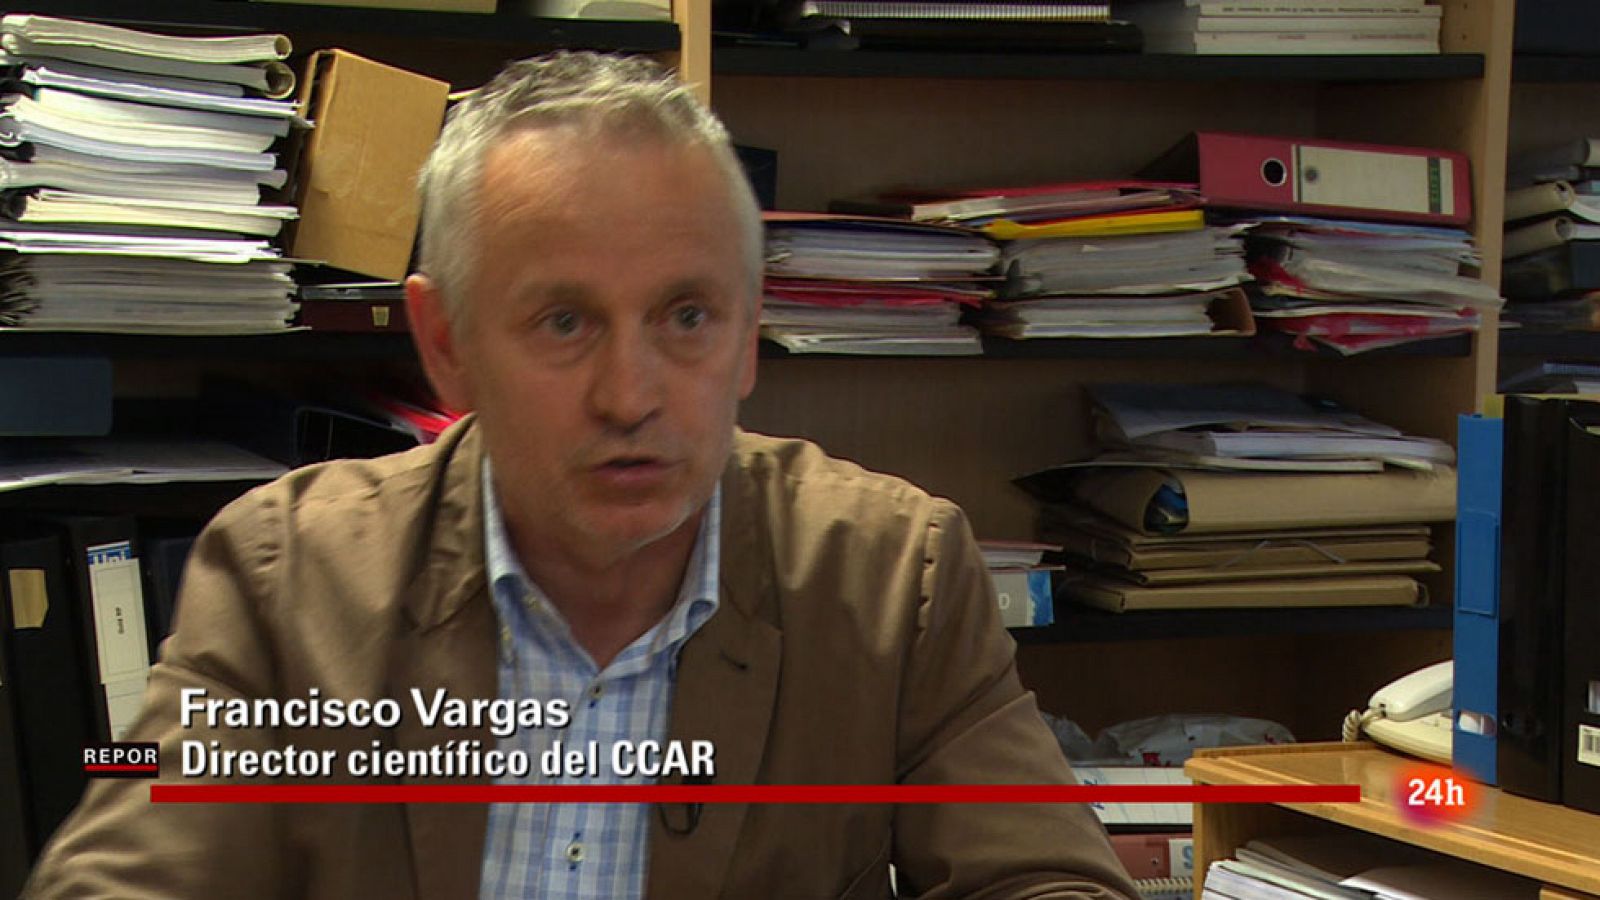 Francisco Vargas es director científico del CCAR (Comité científico asesor en radiofrecuencias)